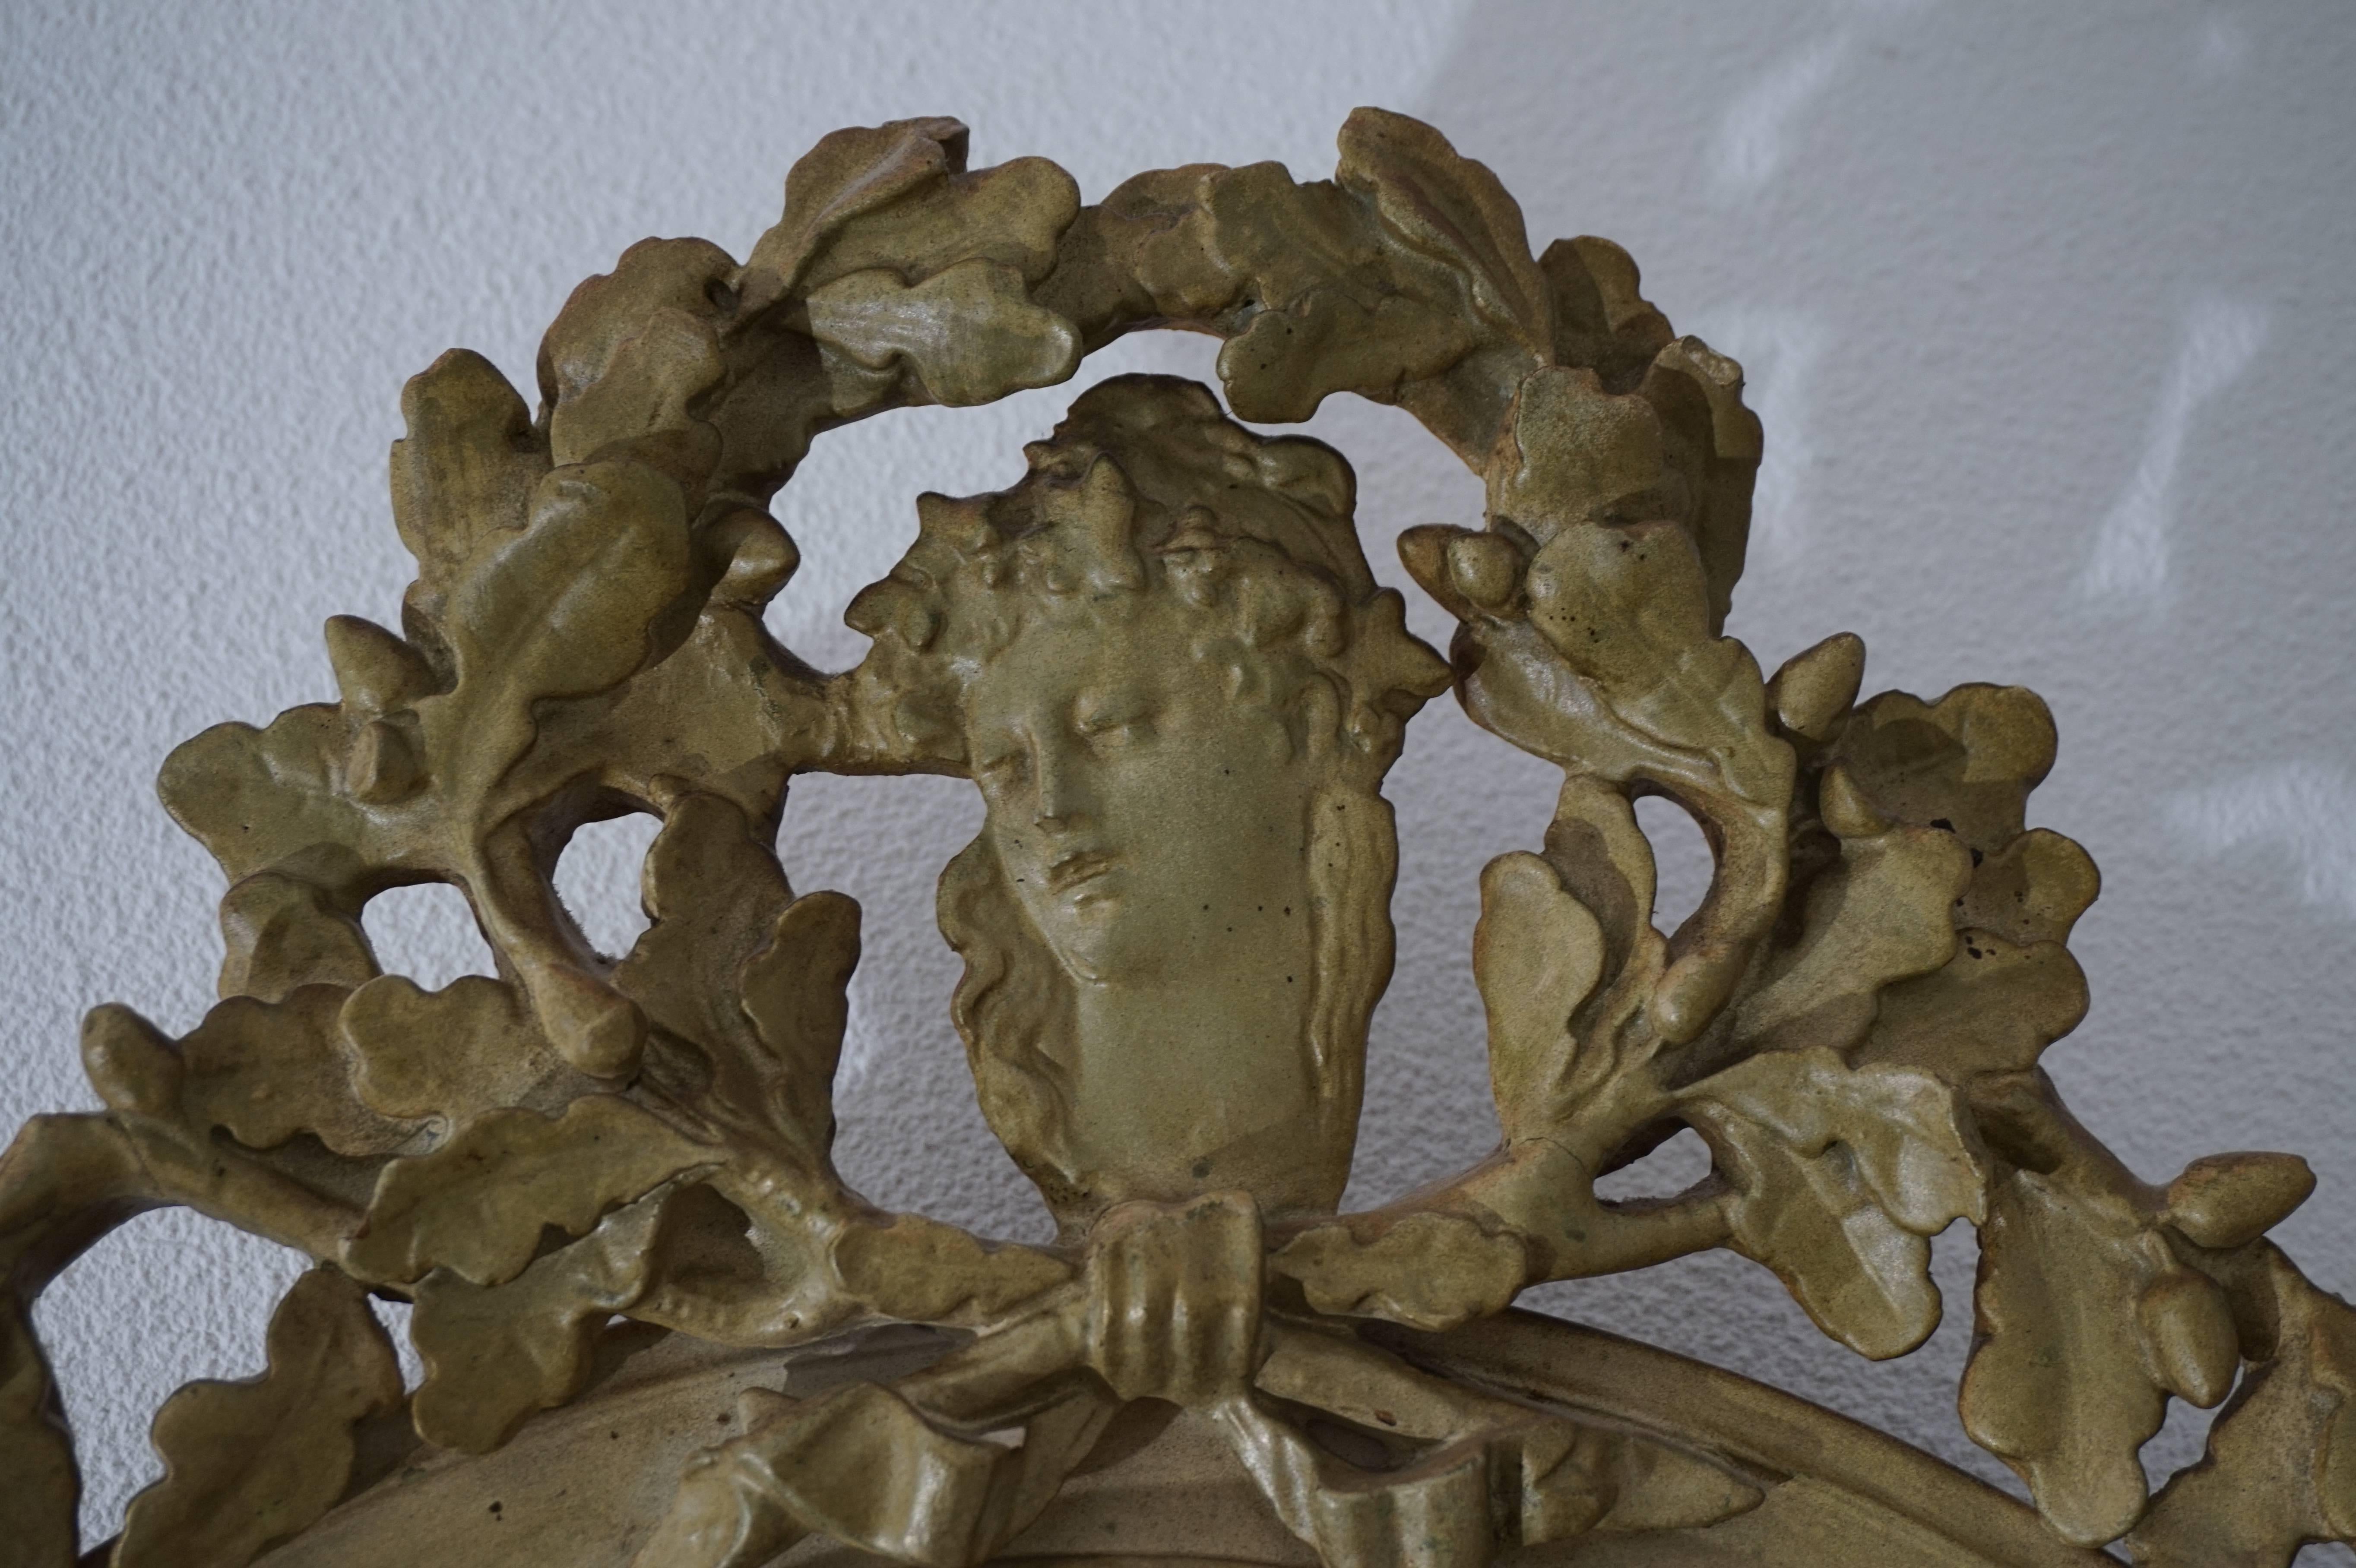 Miroir ancien de taille rare et pratique.

Ce miroir biseauté de la fin de l'époque victorienne est en très bon état et d'origine. Les feuilles de chêne au sommet ont la forme d'une couronne royale. Au centre de cette couronne stylisée se trouve une